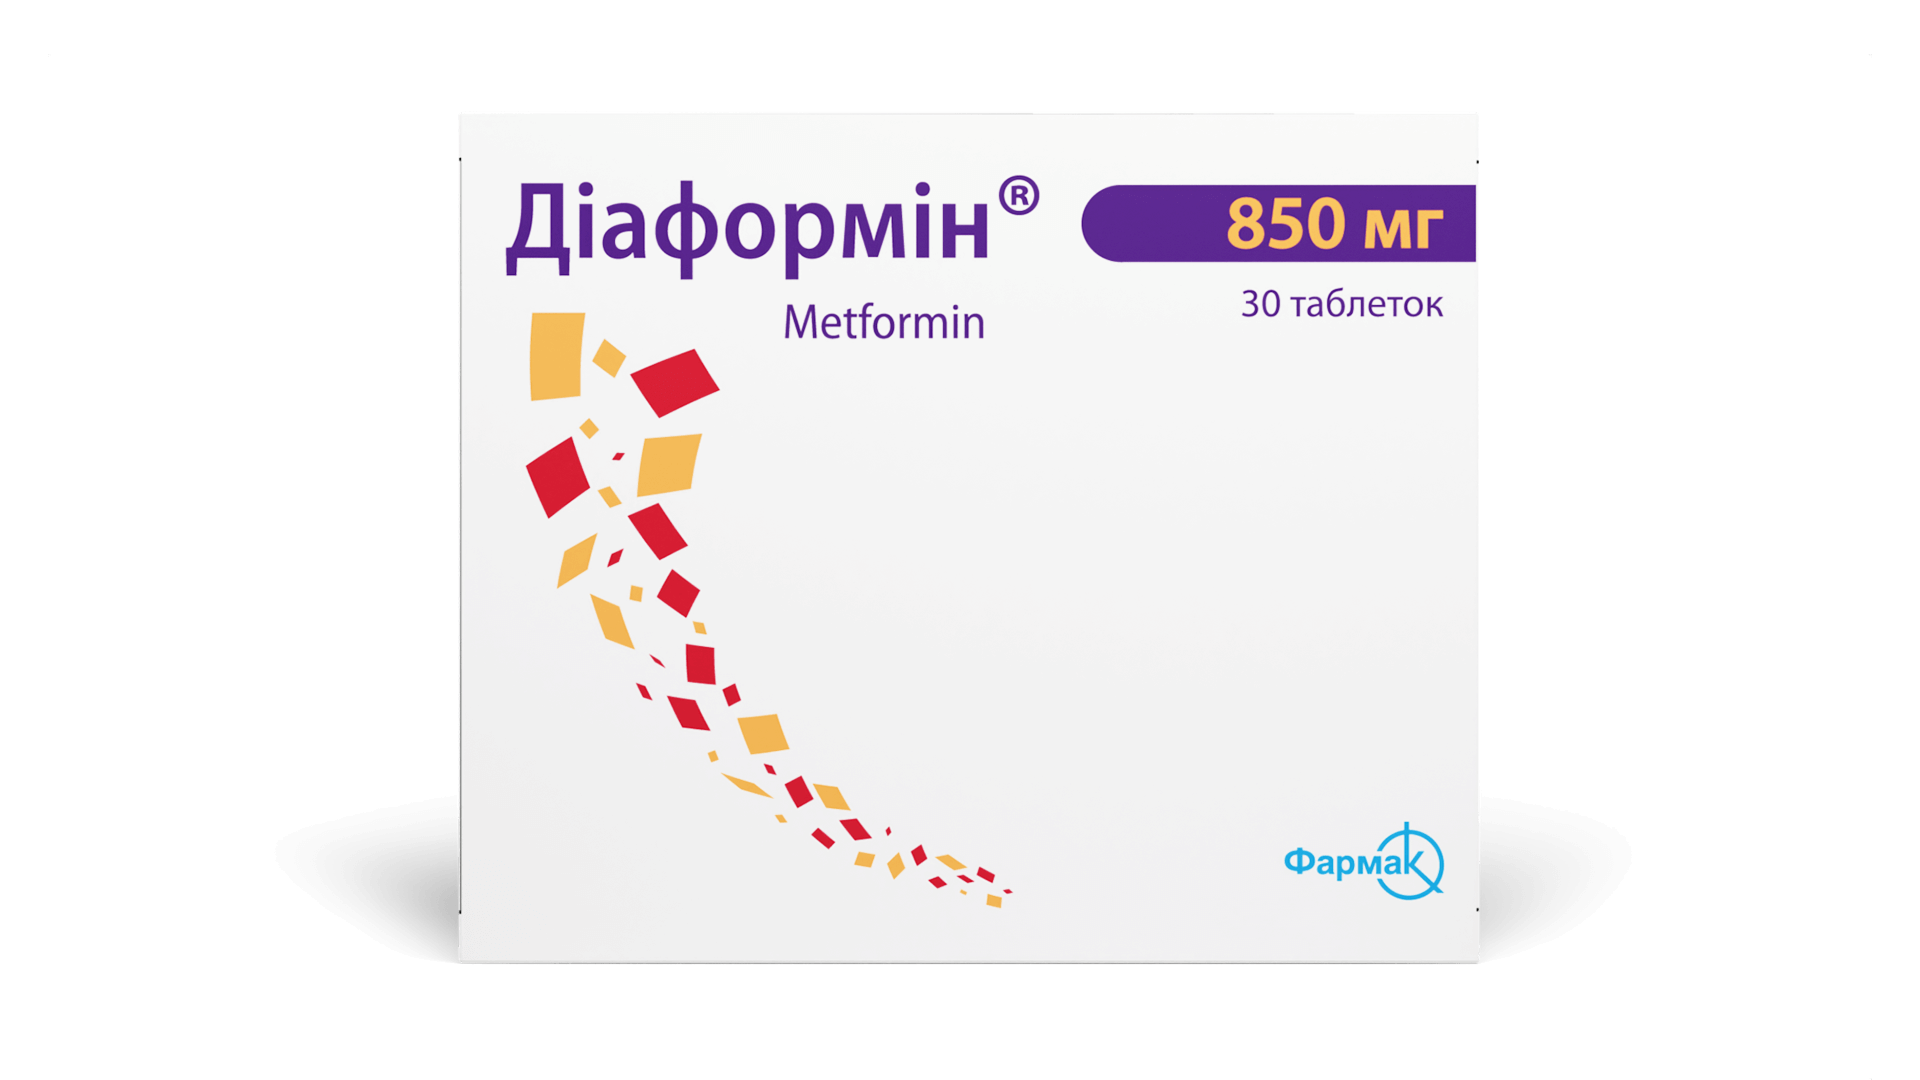 Диаформин® 850 мг (2)